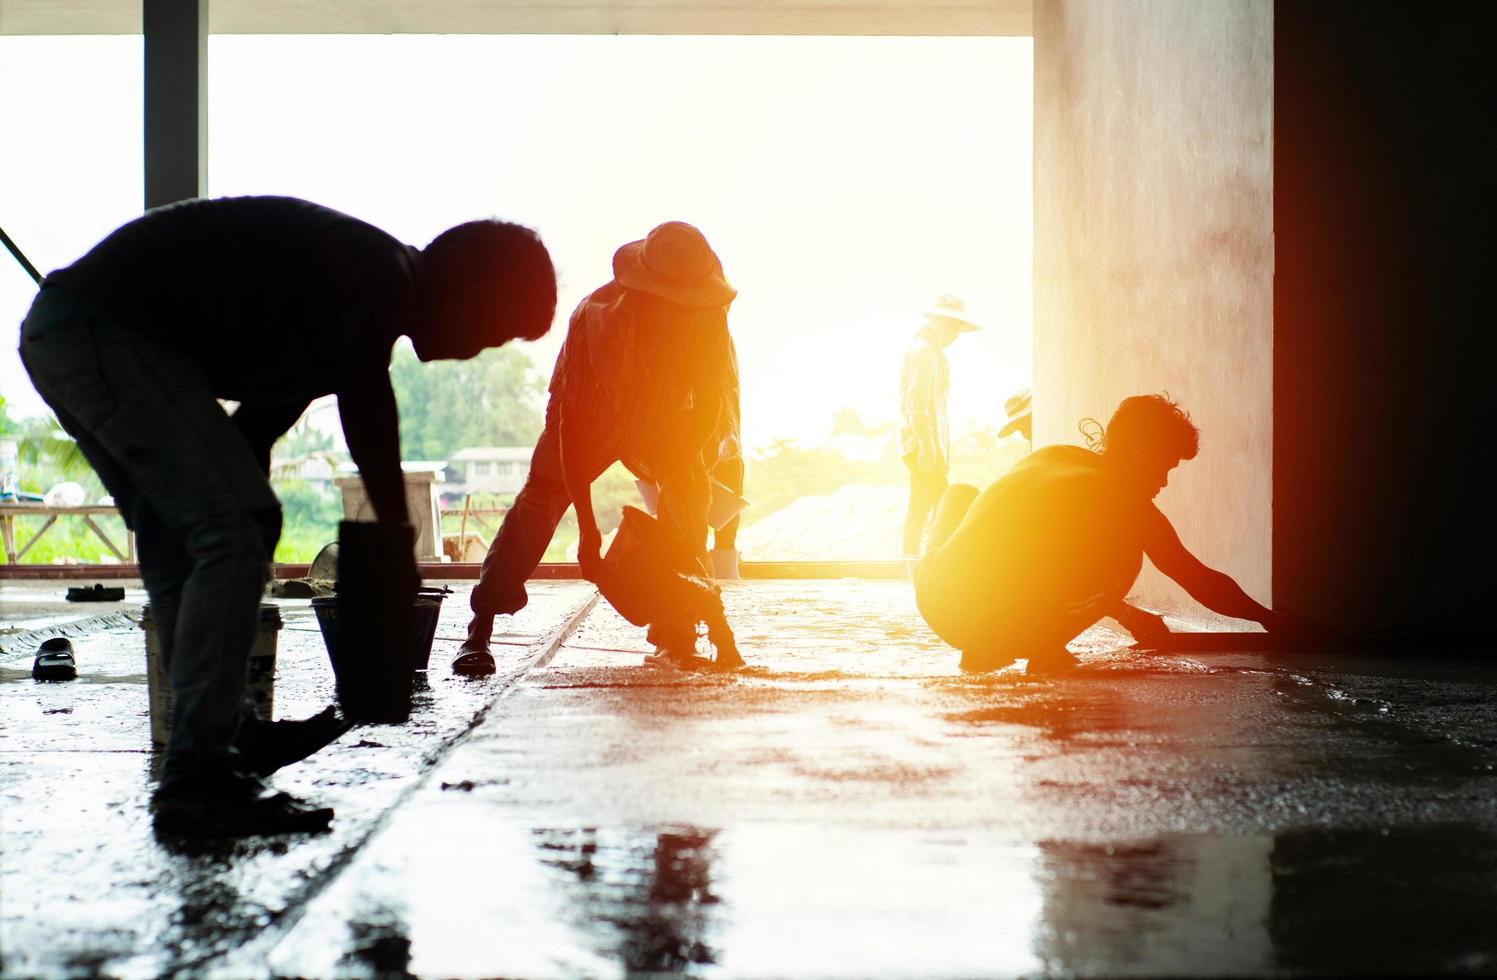 silueta grupo de trabajadores construir el piso de cemento en la casa en construcción foto